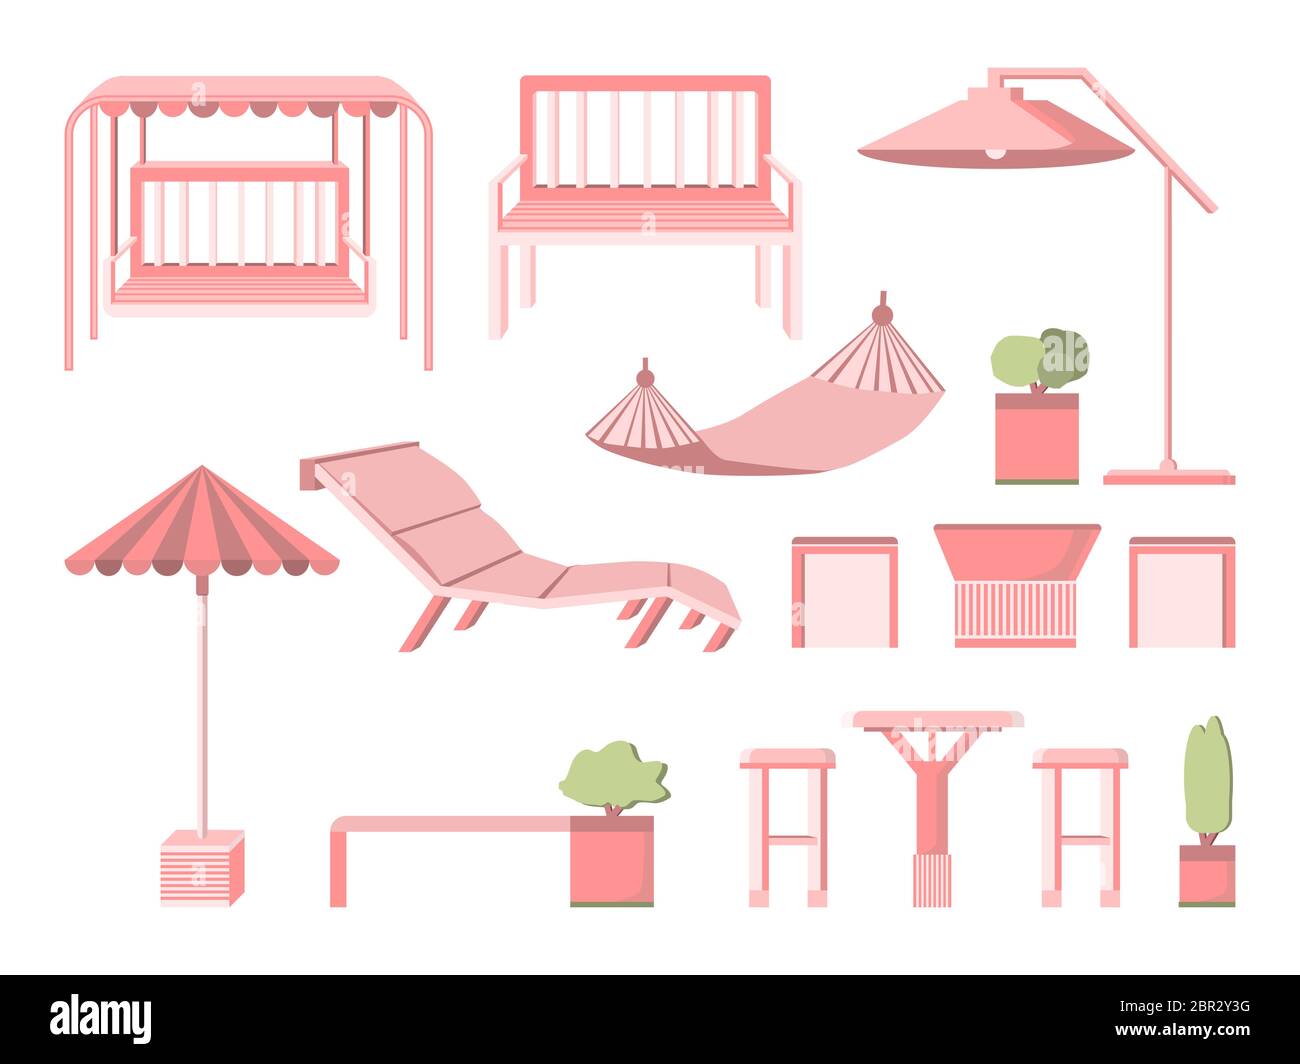 Mobilier de jardin et terrasse de style plat isolé sur fond blanc. Banc, chaise longue, balançoire, chaise longue, parasol, table à thé, arbres. COU Illustration de Vecteur